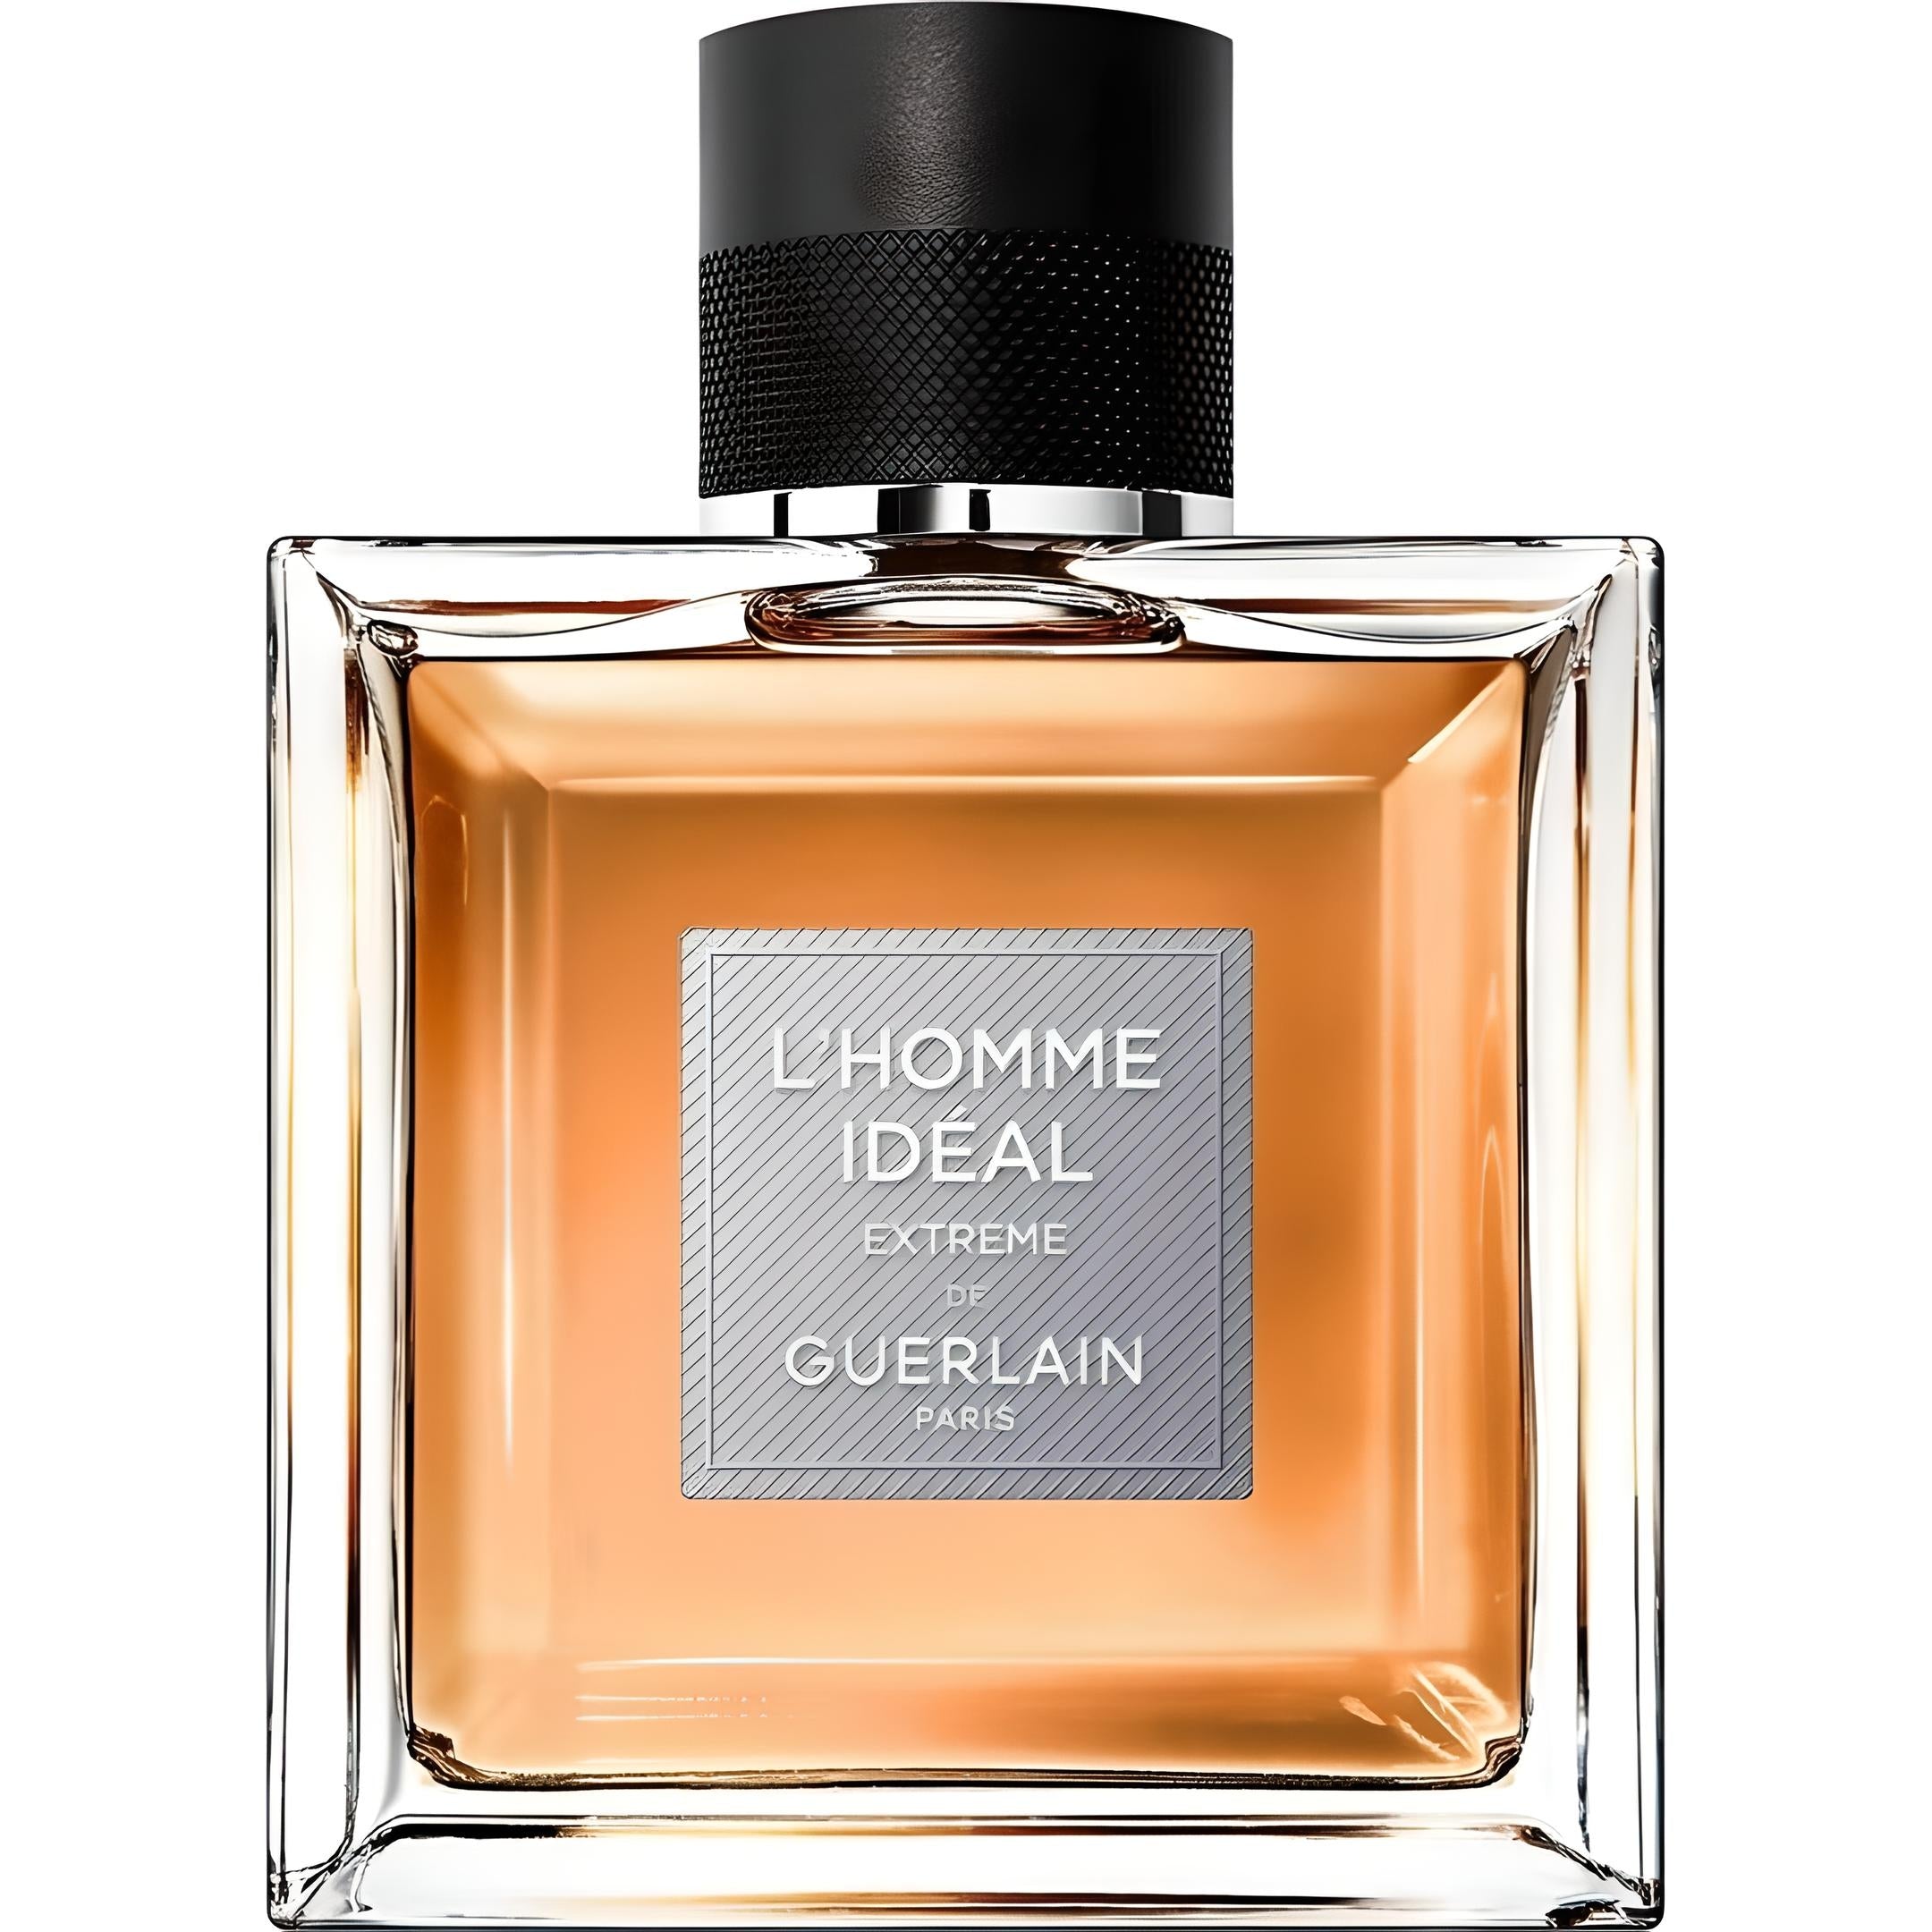 L'HOMME IDEAL EXTREME Eau de Parfum